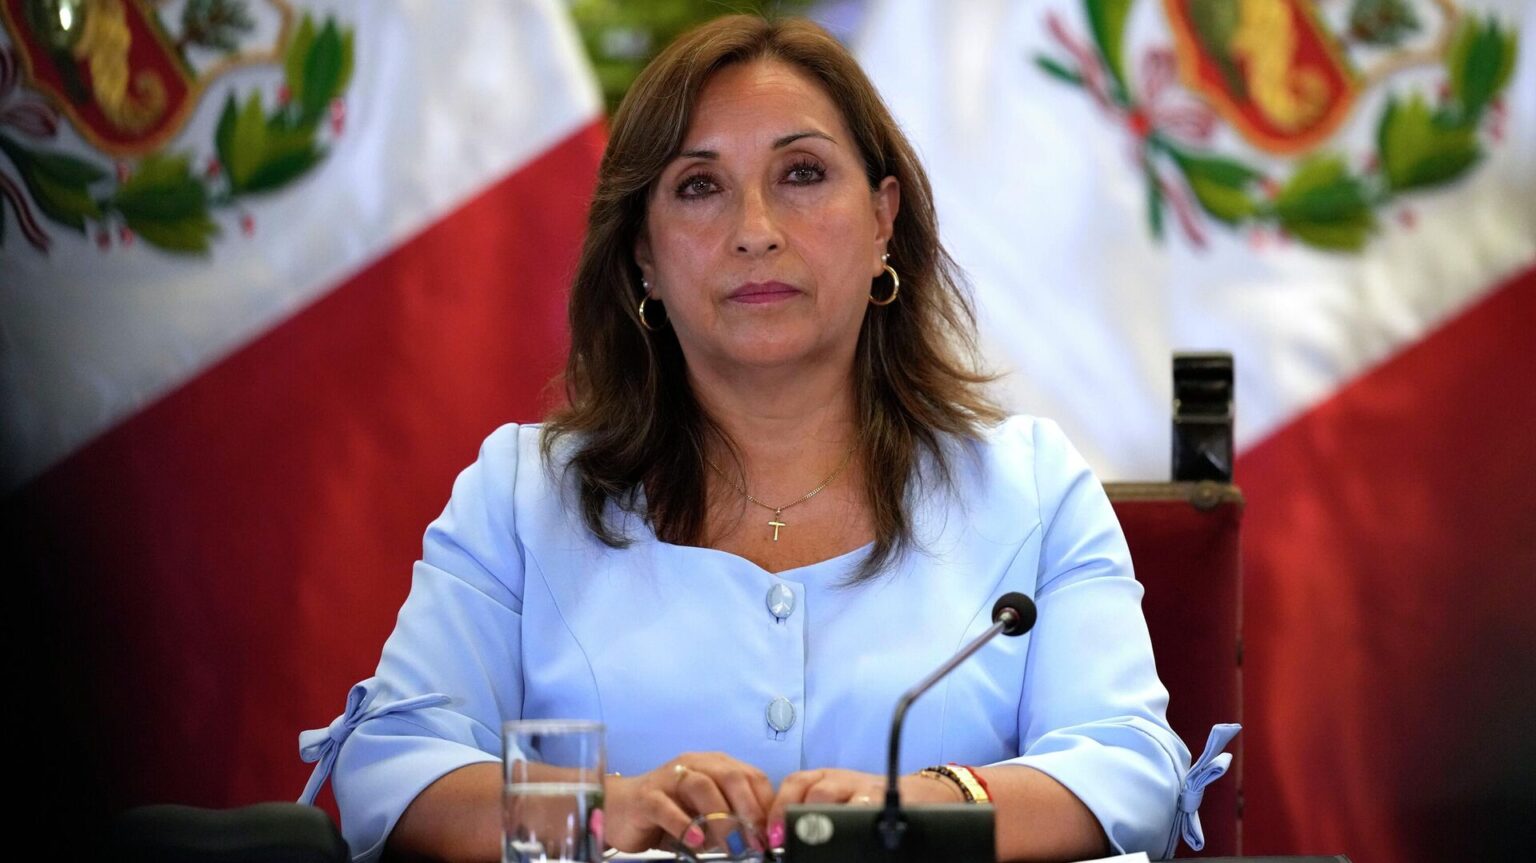 La presidenta de Perú declara de manera inesperada ante el fiscal general